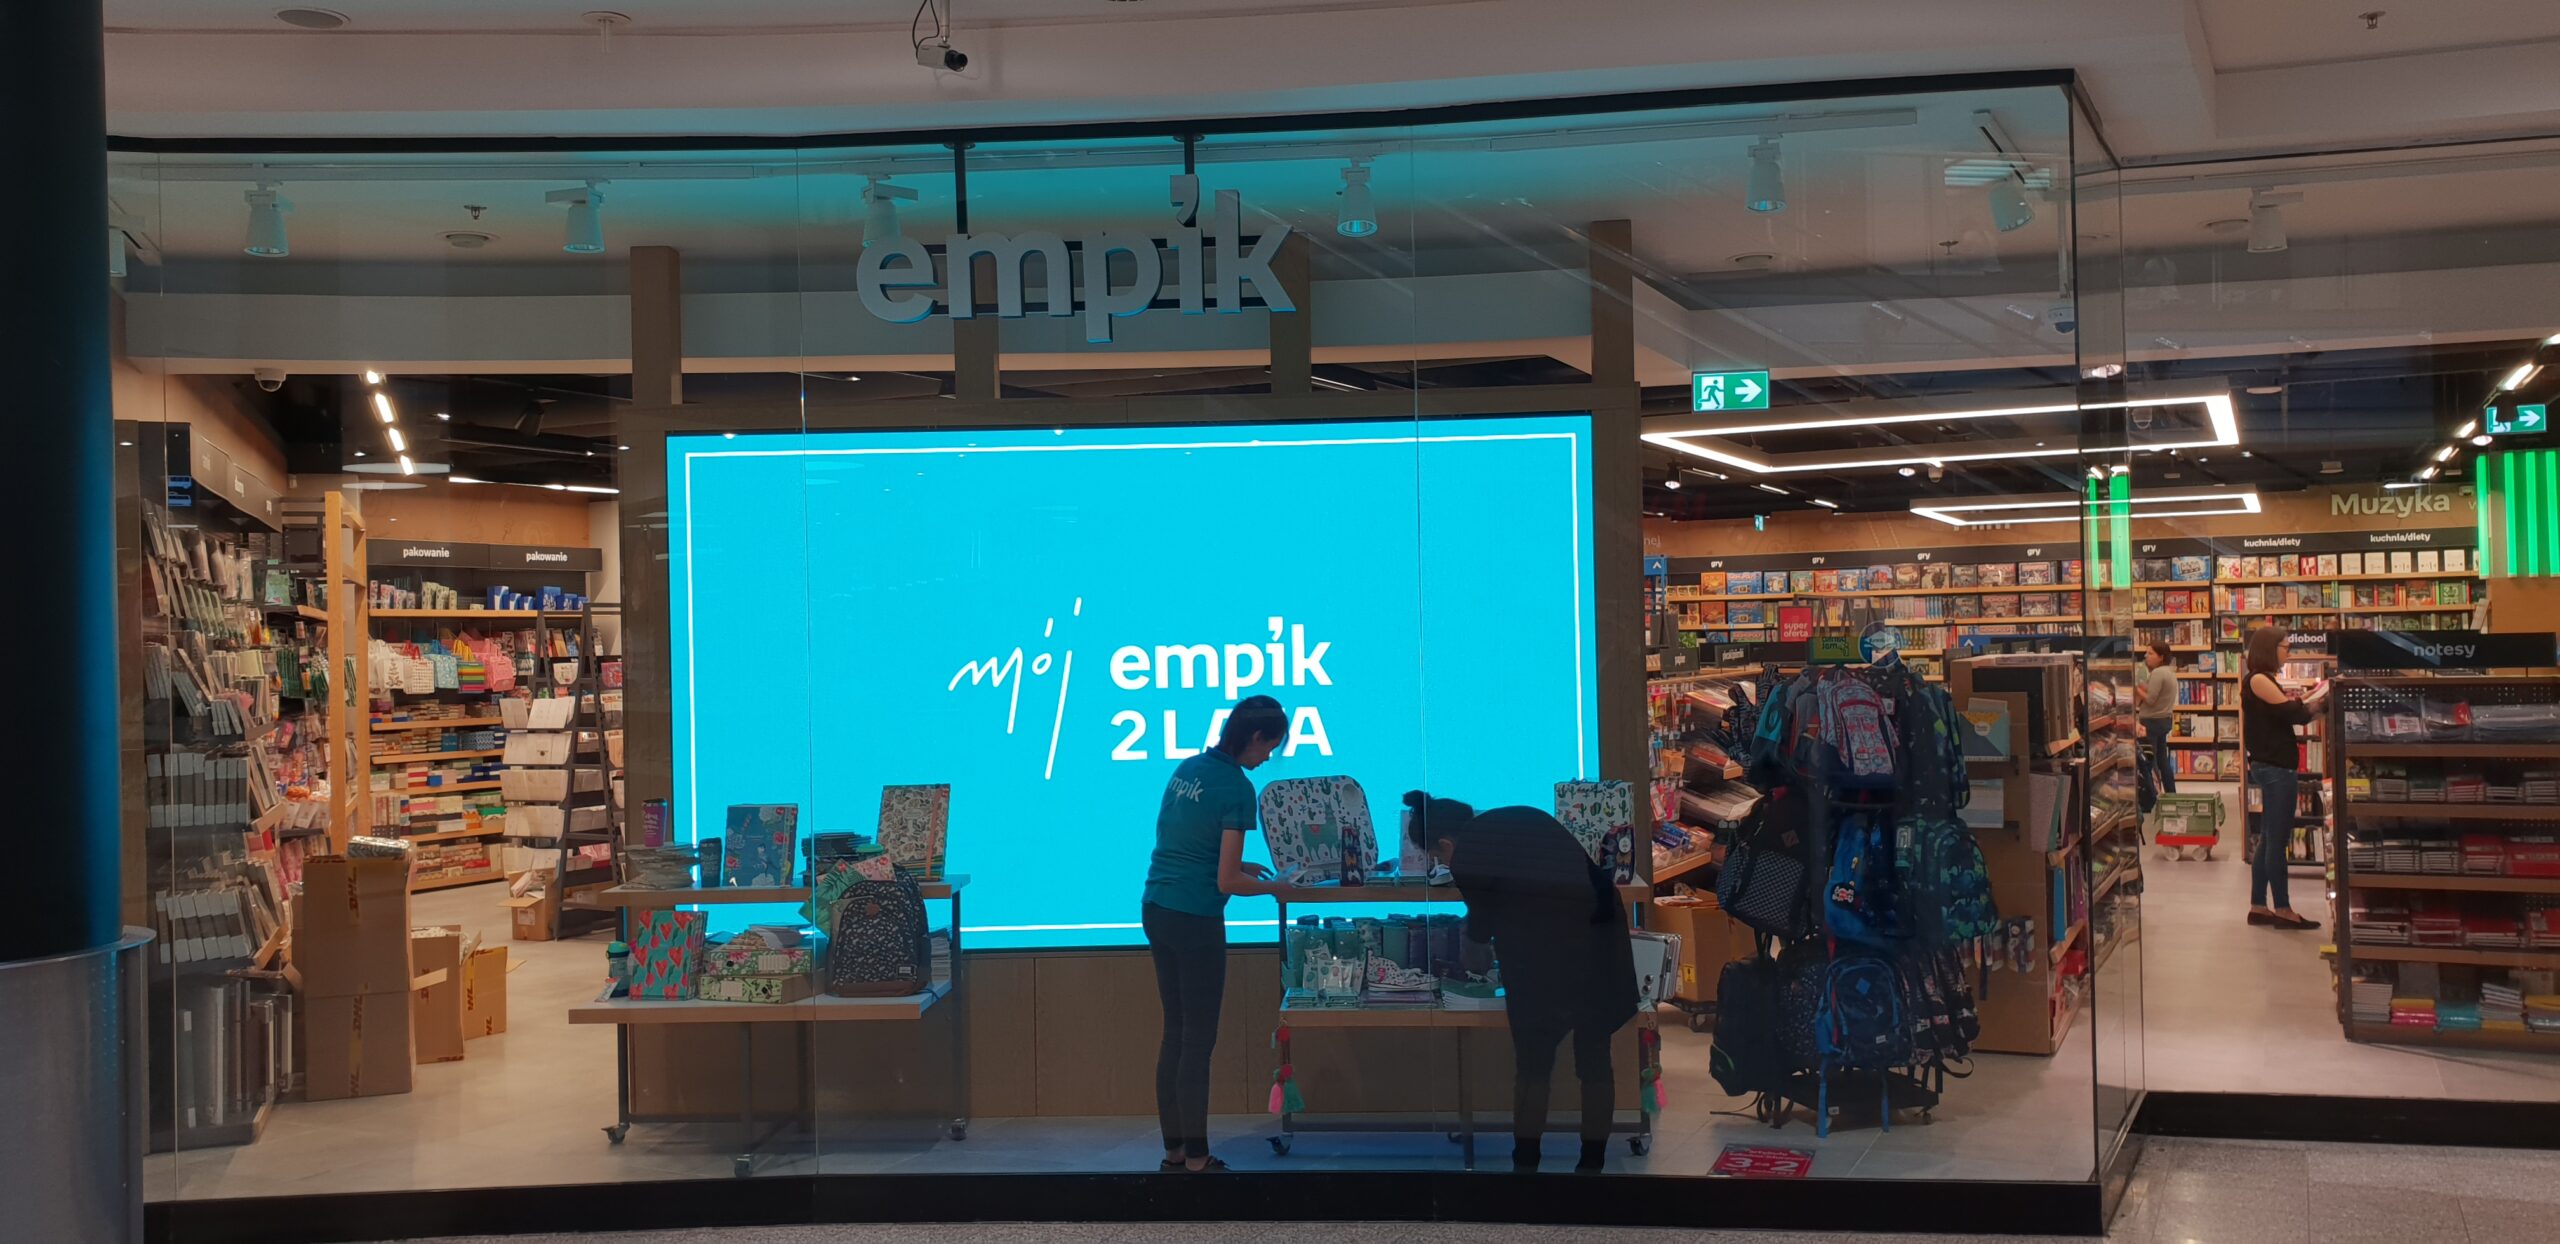 Wewnętrzny ekran LED znajdujący się za przeszkloną witryną sklepu Empik w Krakowie